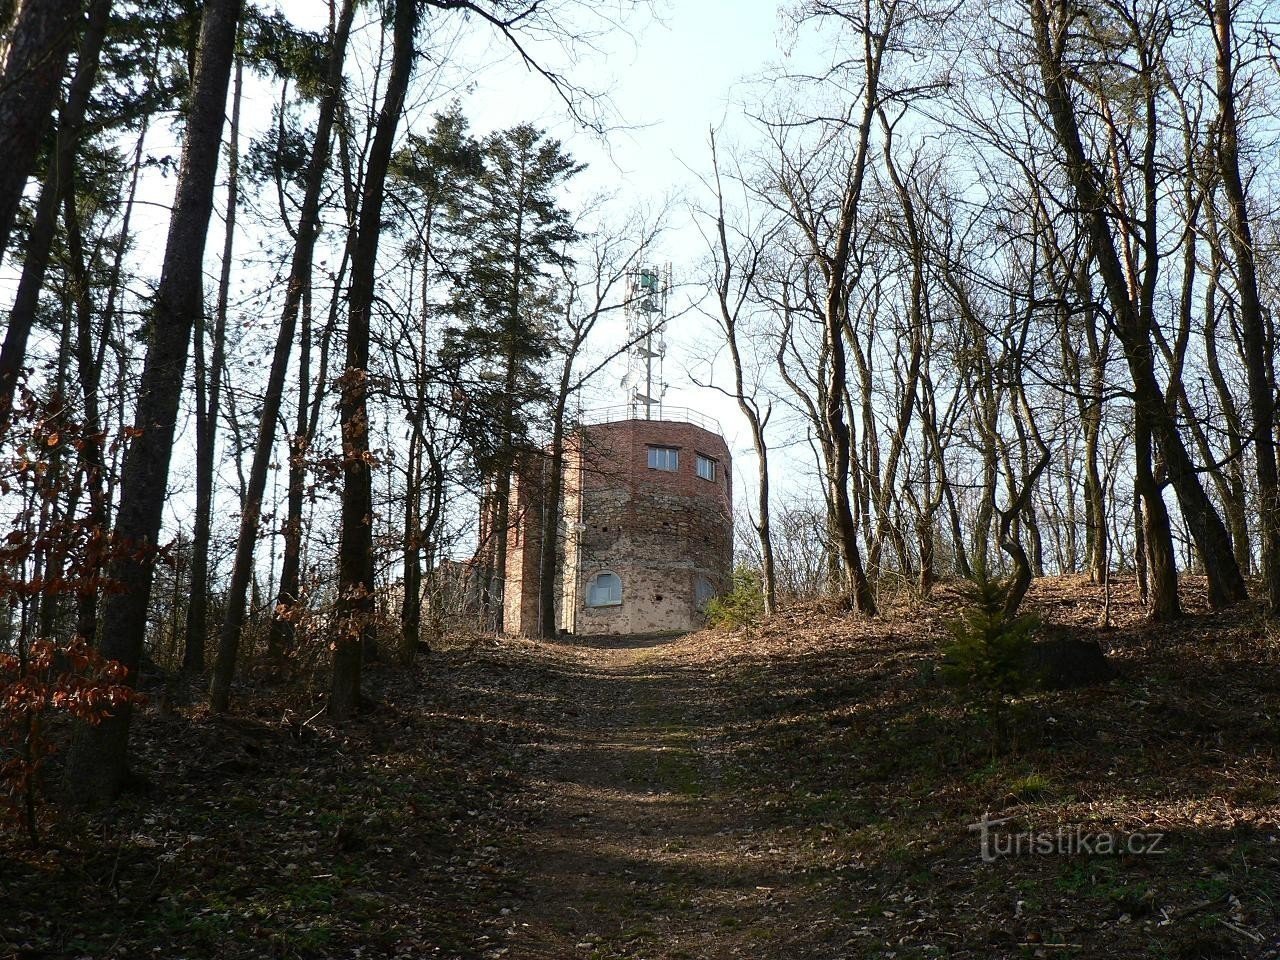 Klatovská Hůrka, widok na wieżę widokową